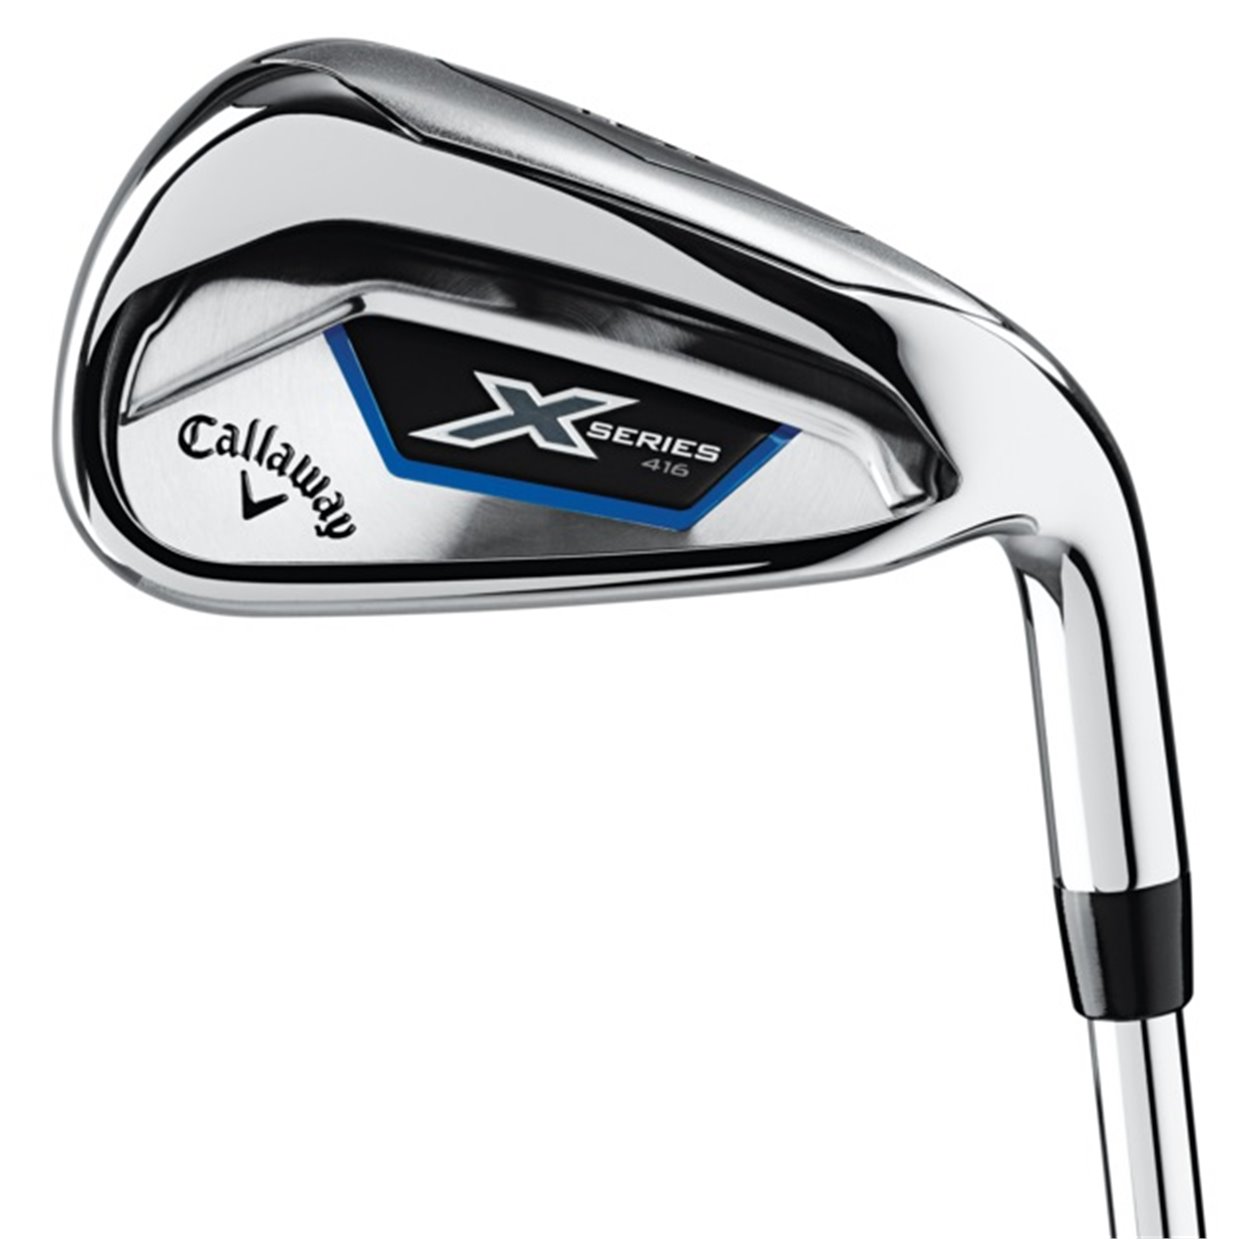 callaway-x-series-416-iron-set - Riverside Golf - Golf Clubs